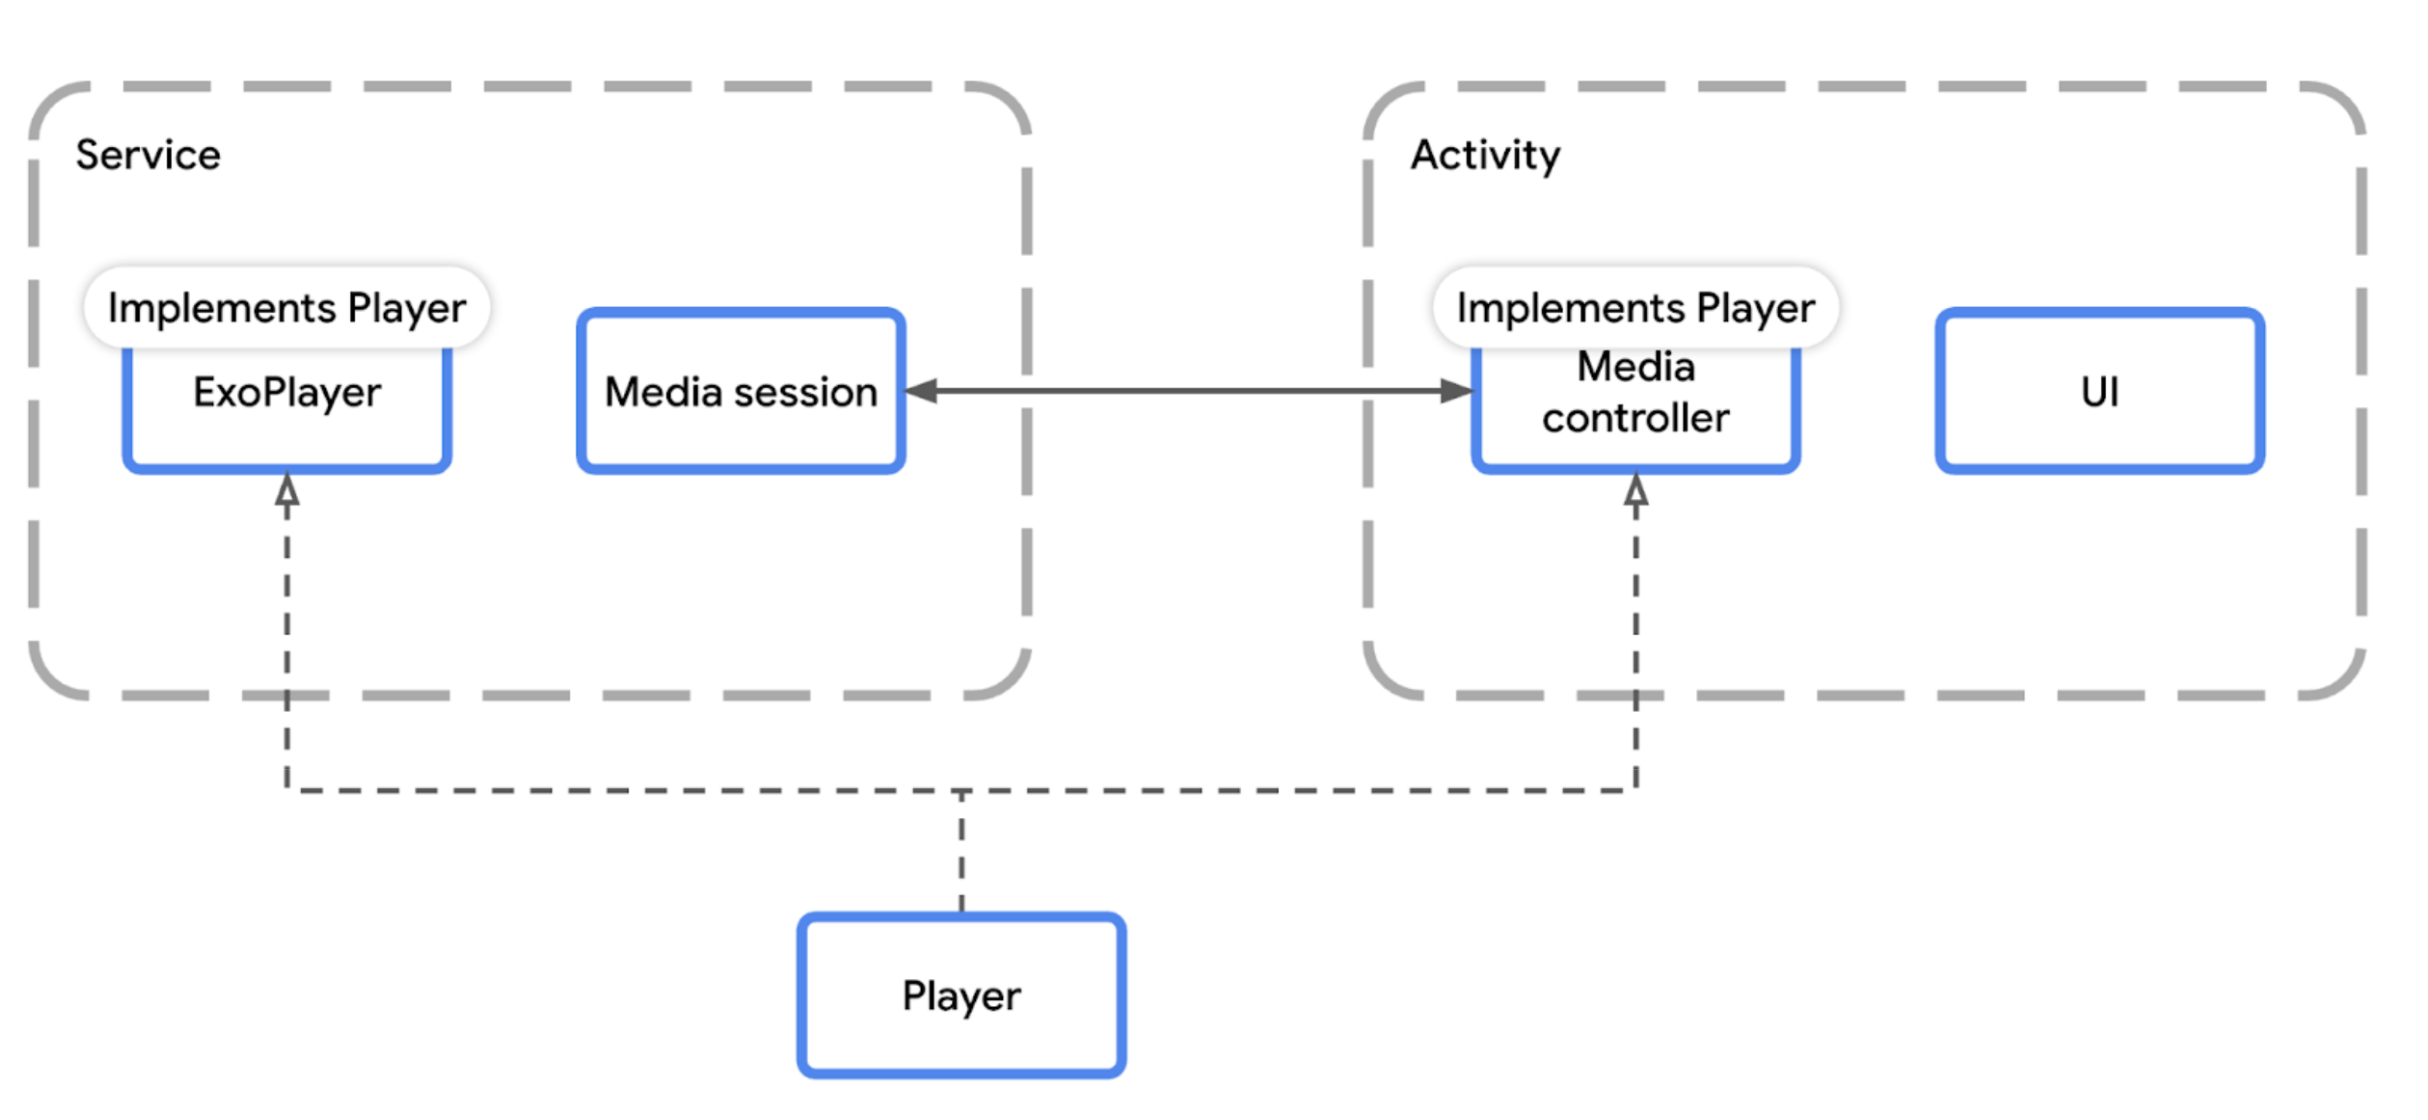 展示 Media3 播放组件如何适应媒体应用架构的示意图。